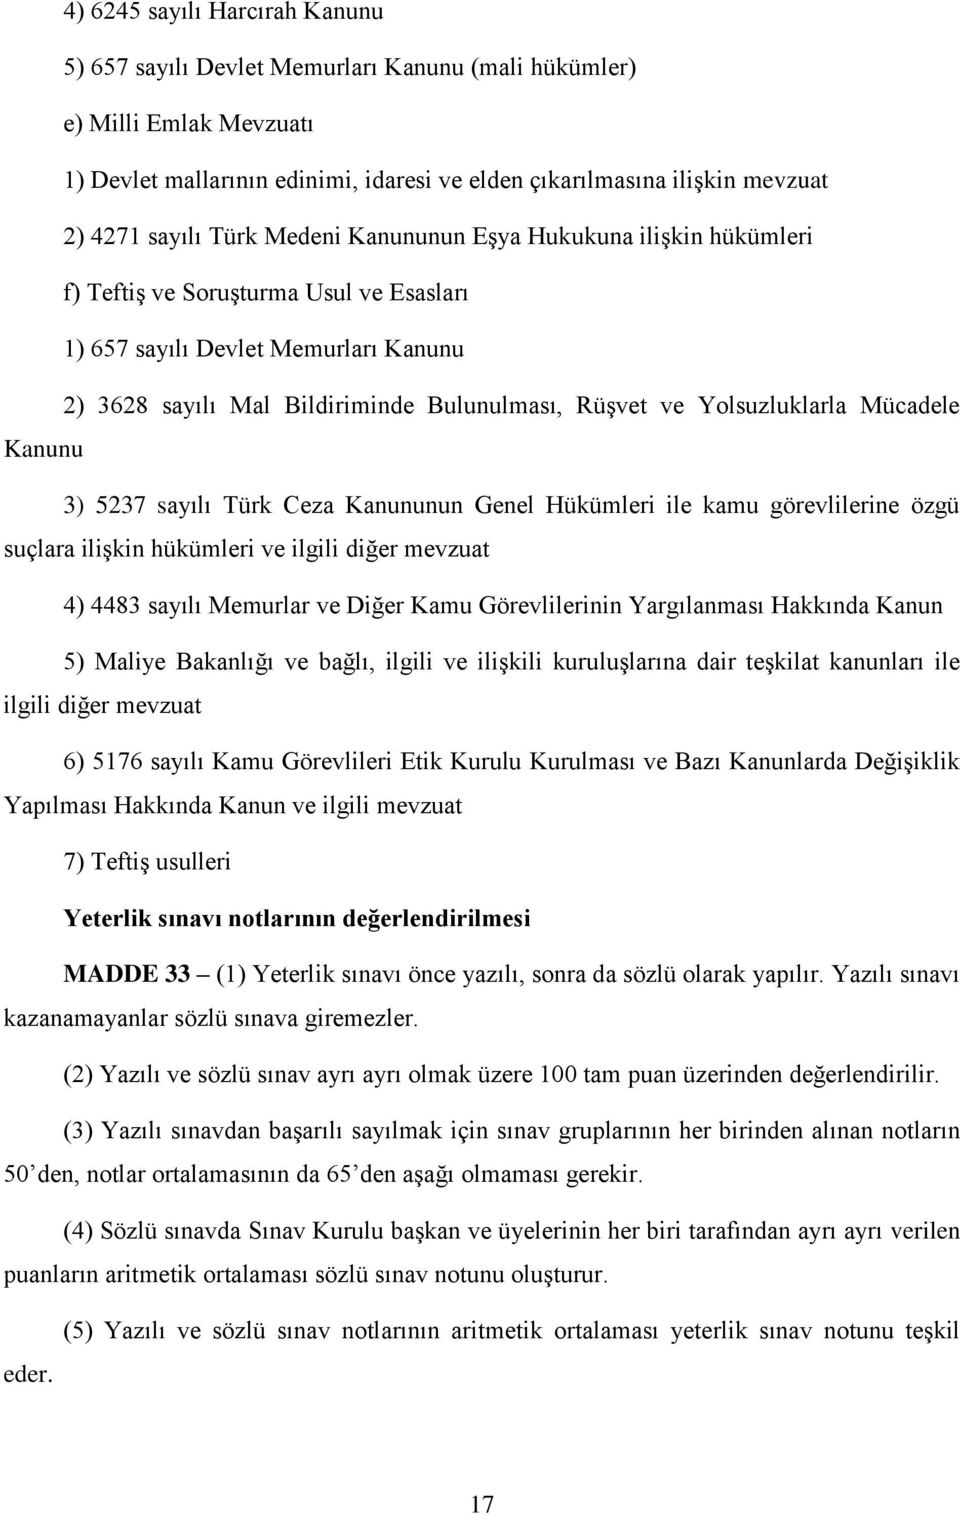 Yolsuzluklarla Mücadele Kanunu 3) 5237 sayılı Türk Ceza Kanununun Genel Hükümleri ile kamu görevlilerine özgü suçlara ilişkin hükümleri ve ilgili diğer mevzuat 4) 4483 sayılı Memurlar ve Diğer Kamu